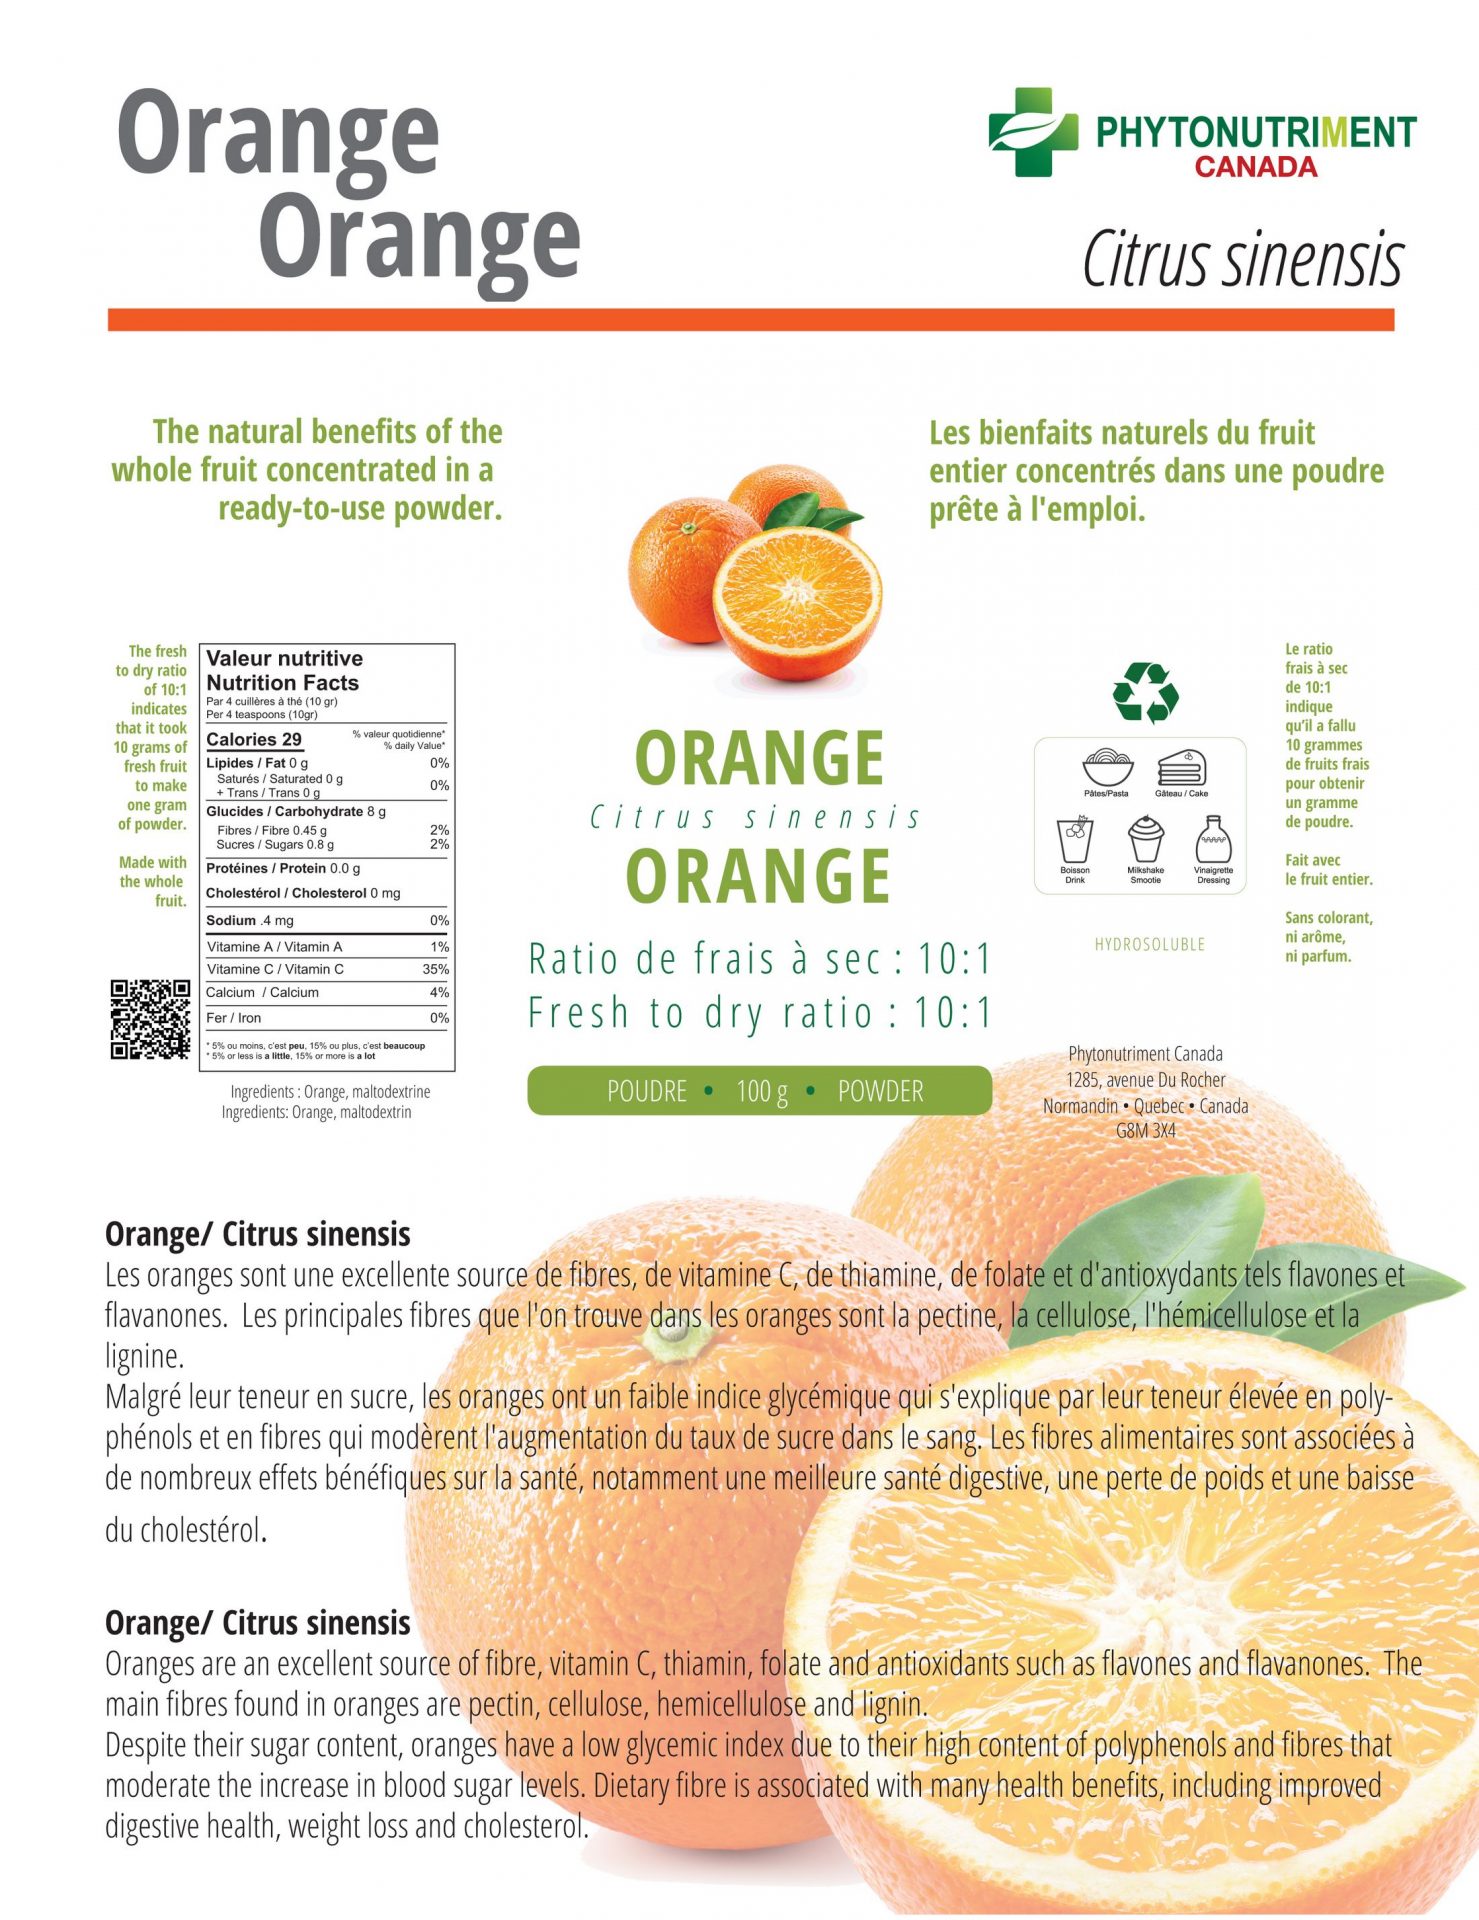 Orange en poudre de Phytonutriment Canada